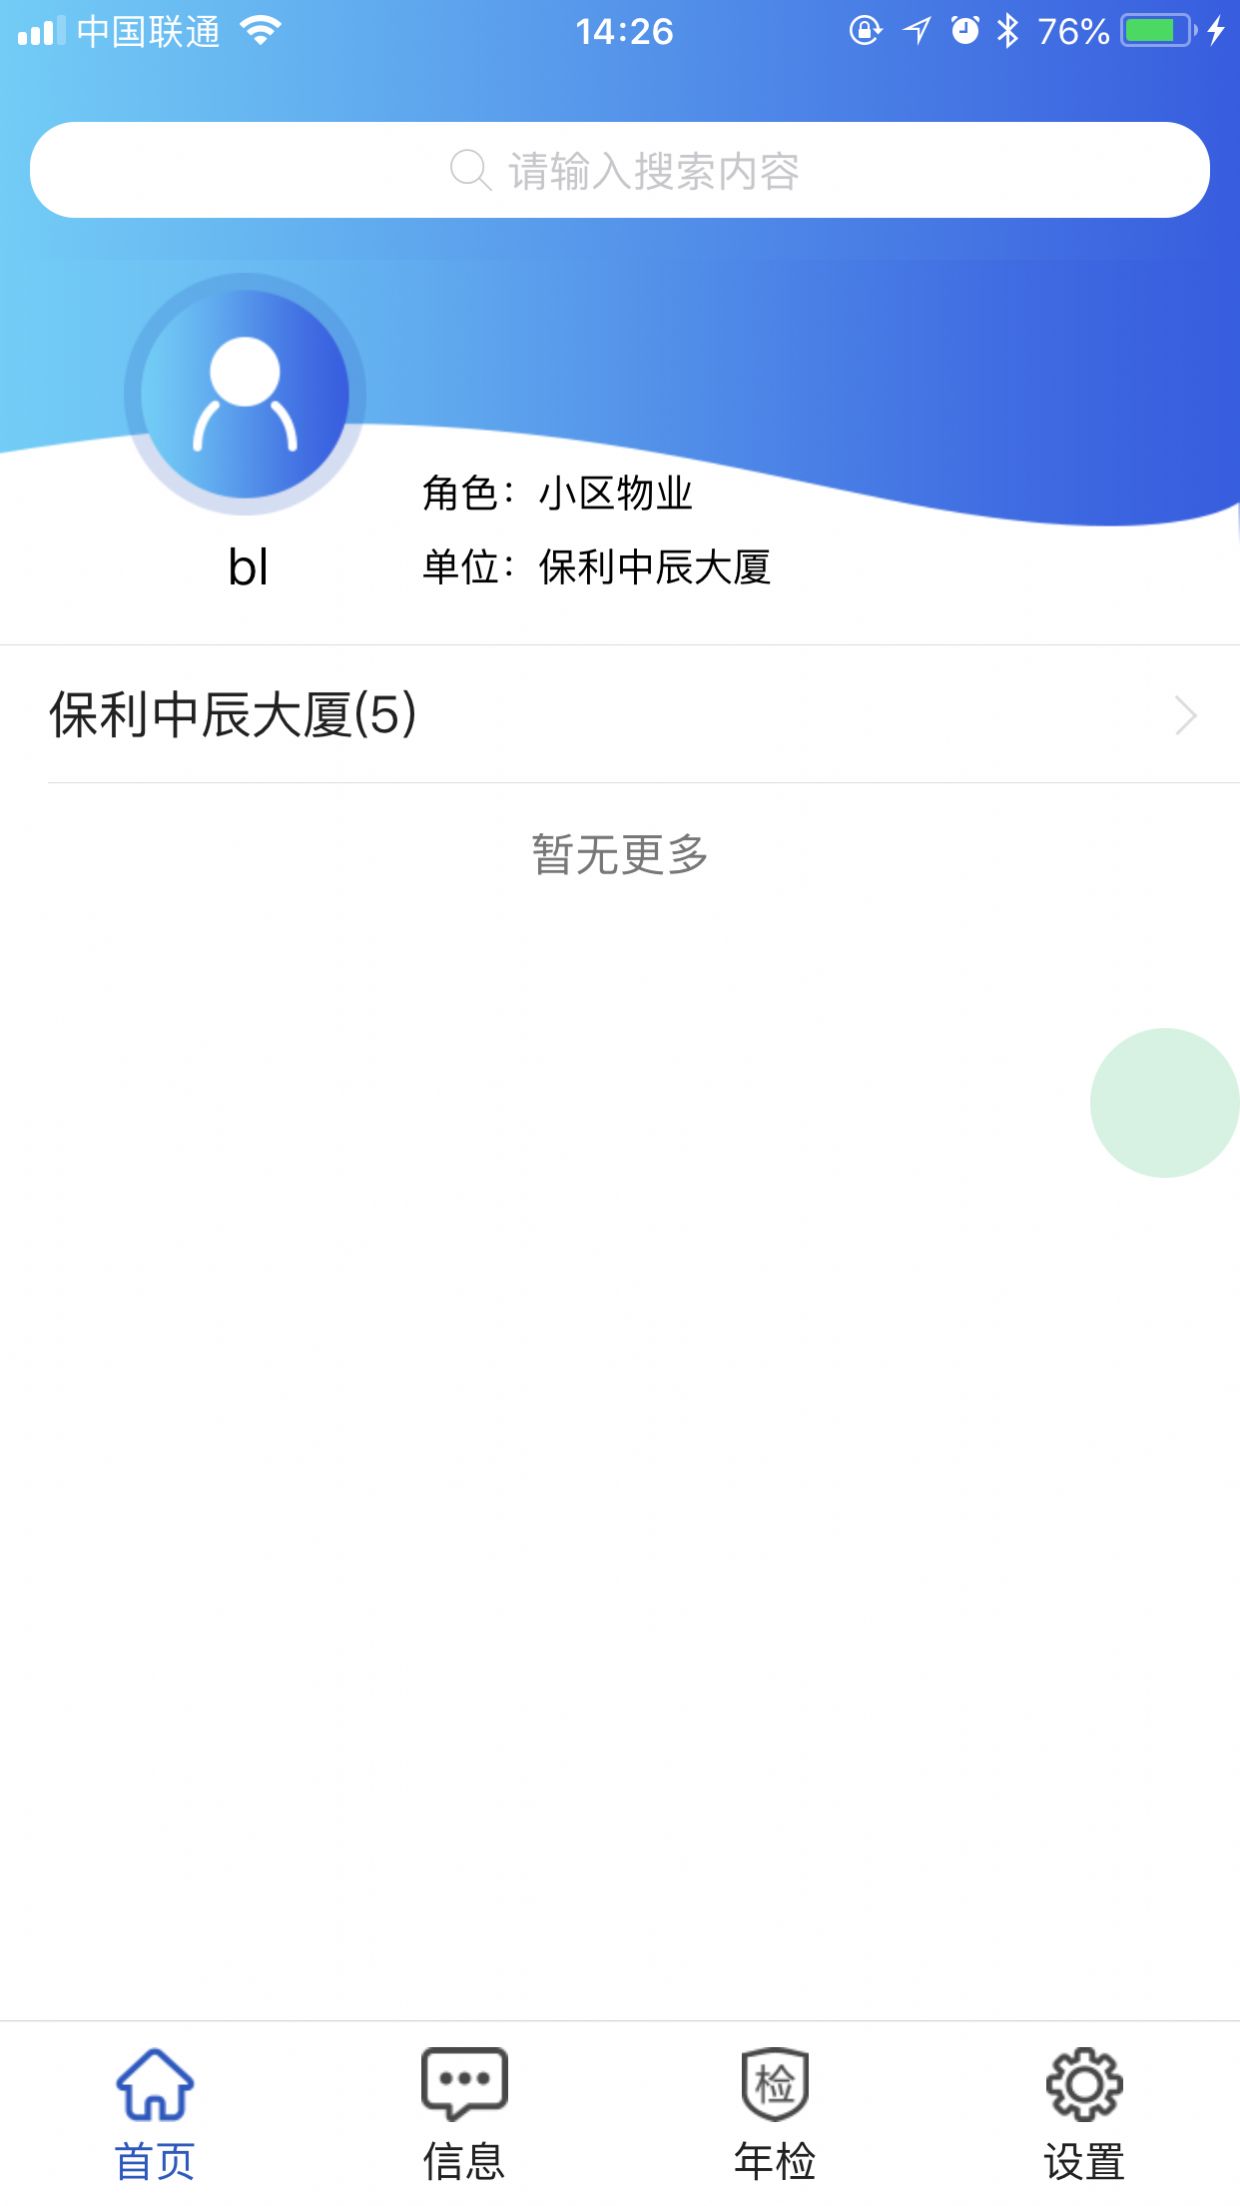 苏州电梯动态监管安卓版app下载图片1